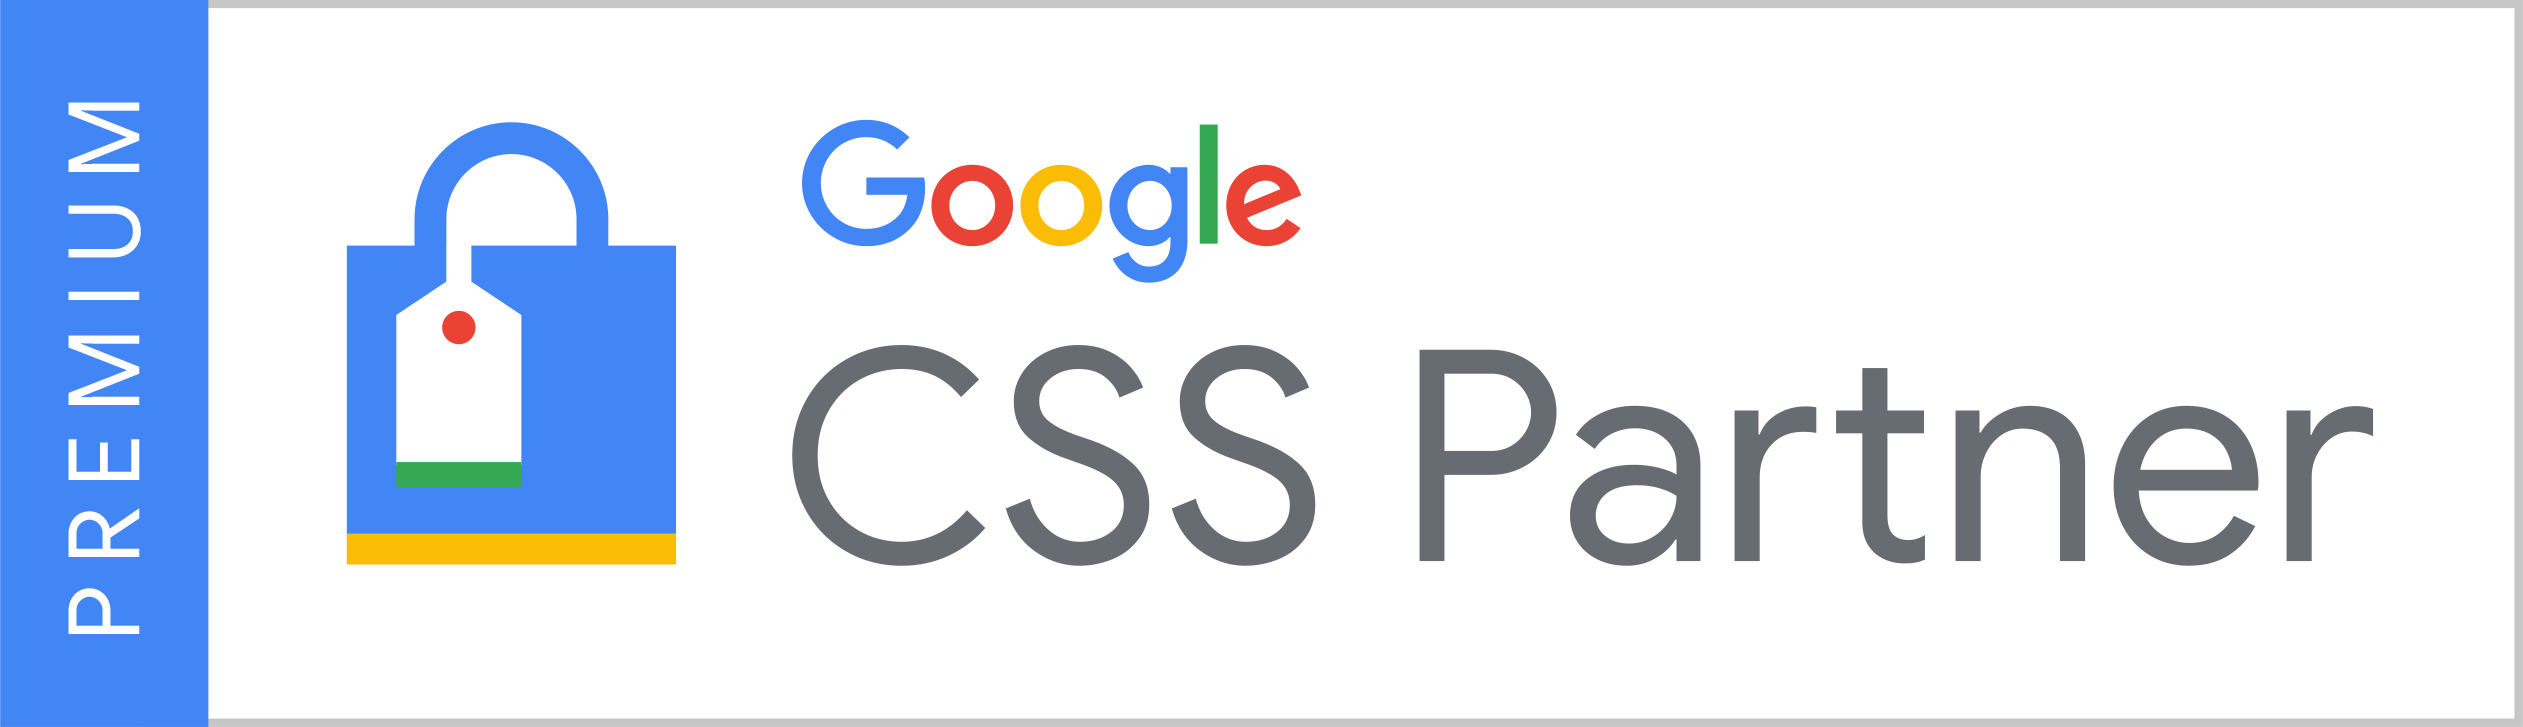 Premium Google CSS Partner